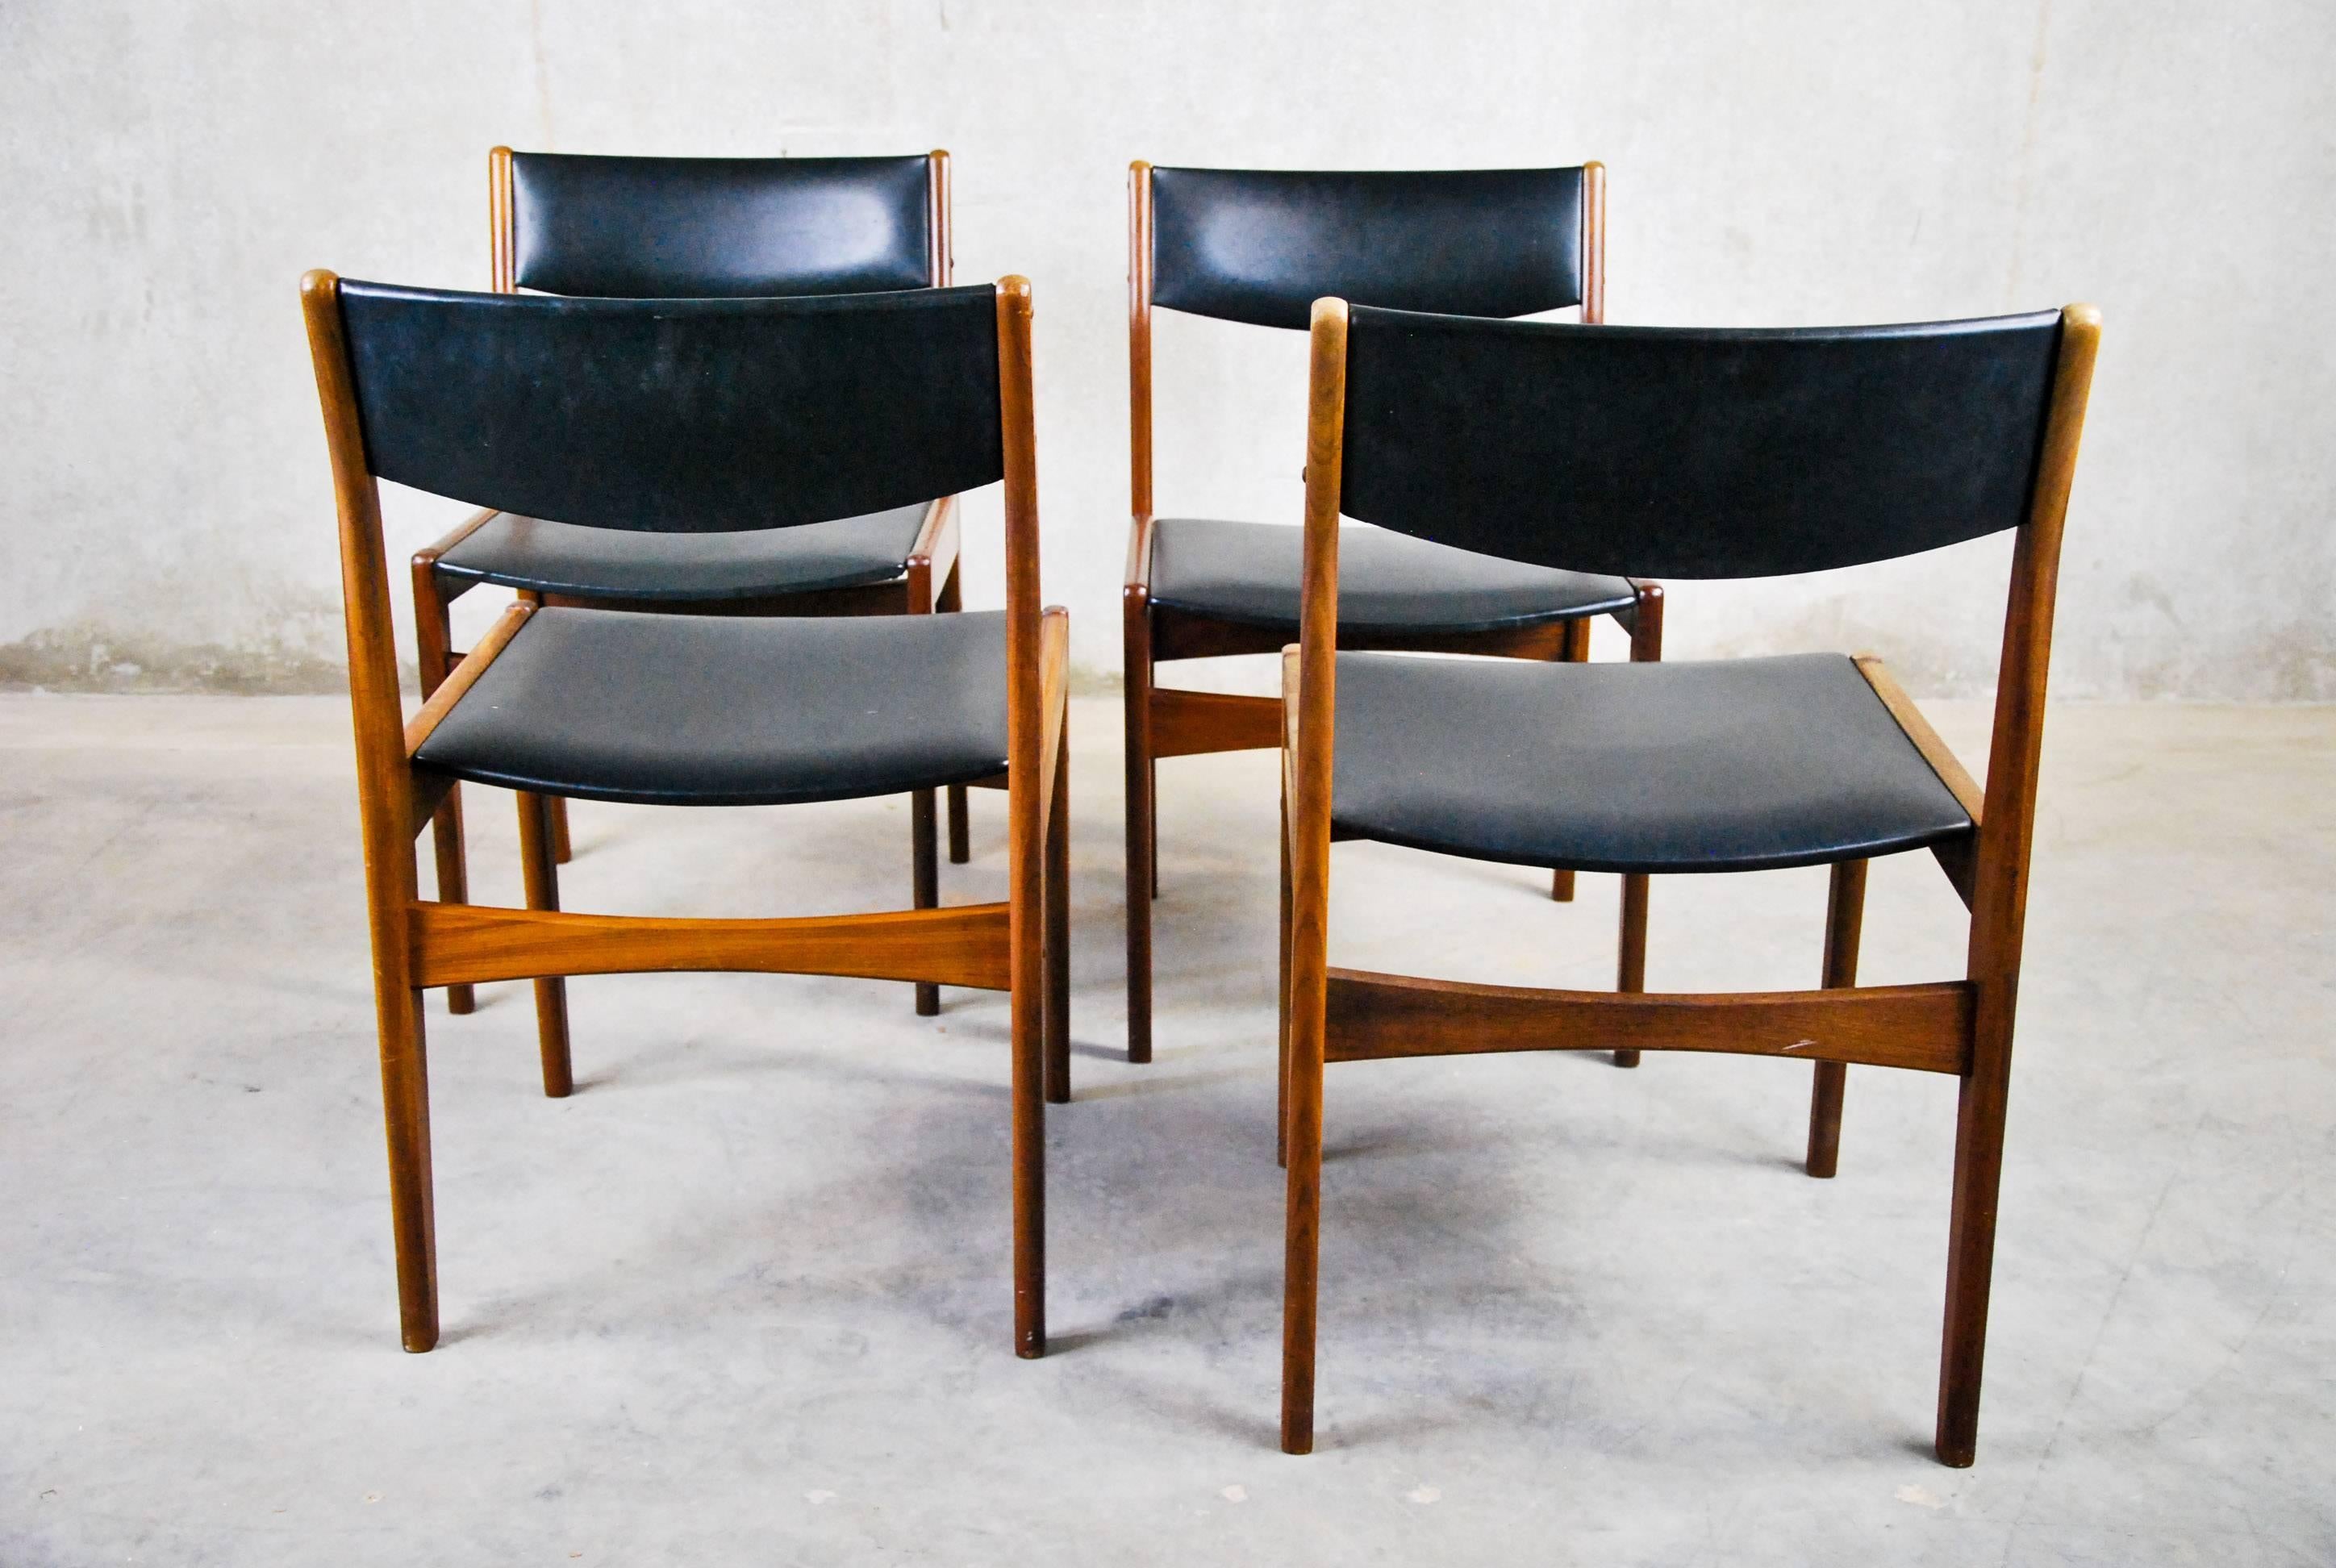 1960 Dänische Teakholz-Esszimmerstühle von Poul Volther für Frem Rojle (Skandinavische Moderne)